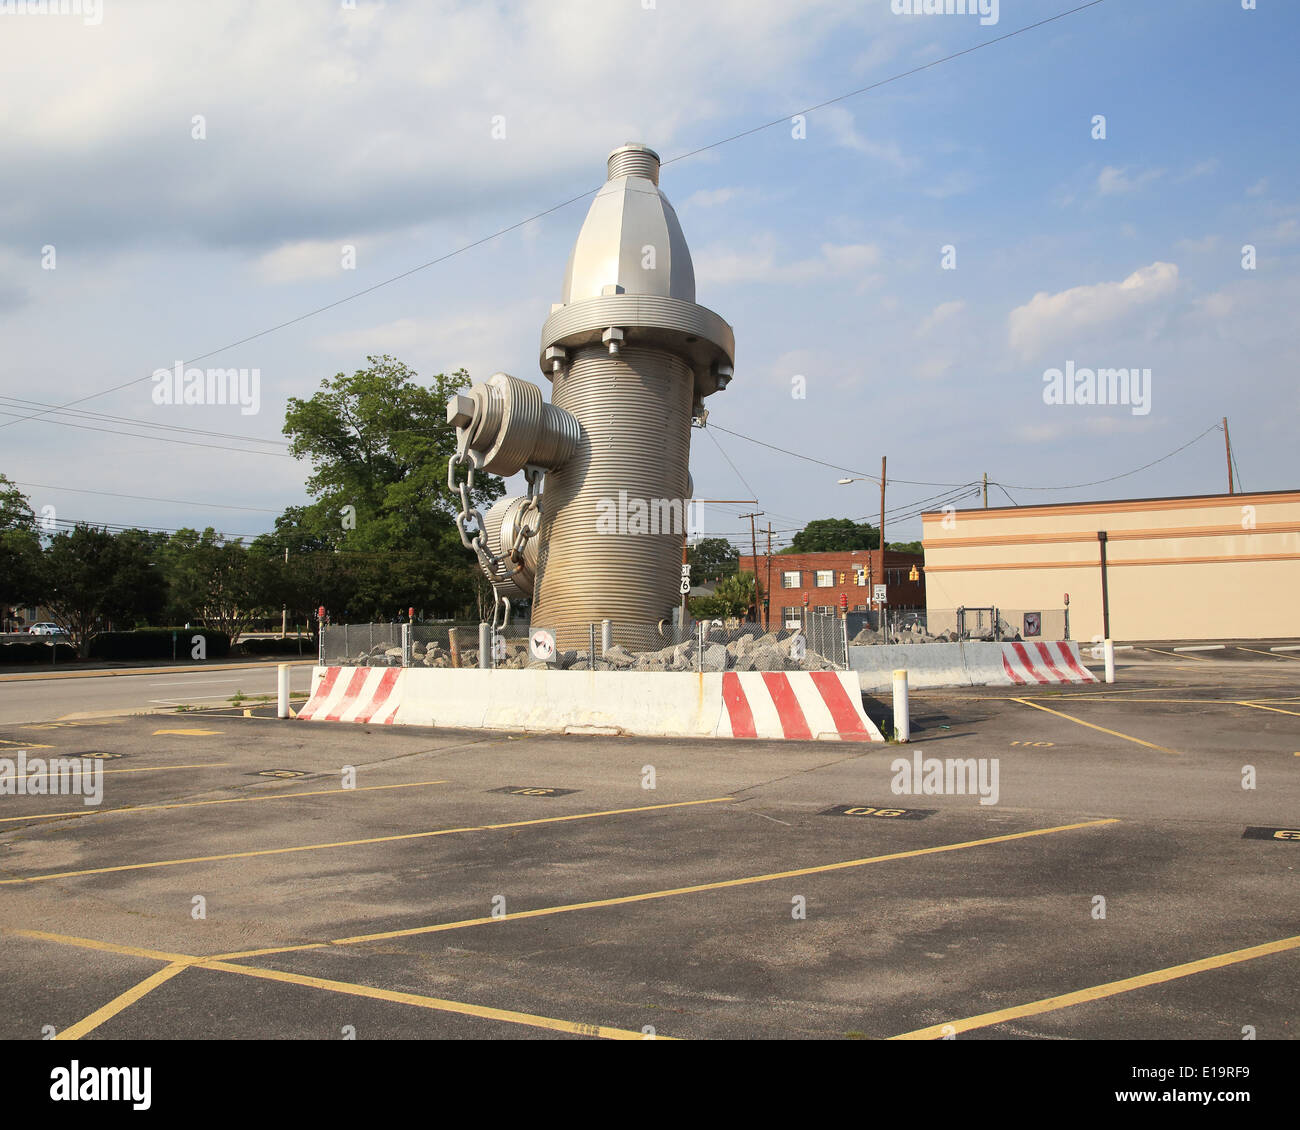 Hidrante más grande del mundo , se inauguró oficialmente en la ciudad de Columbia, Carolina del Sur el 18 de febrero de 2001. El hidrante es de 39 pies de altura con casi cinco toneladas de acero conjunto escultórico en una base de hormigón .Fotos por Catherine Brown Foto de stock